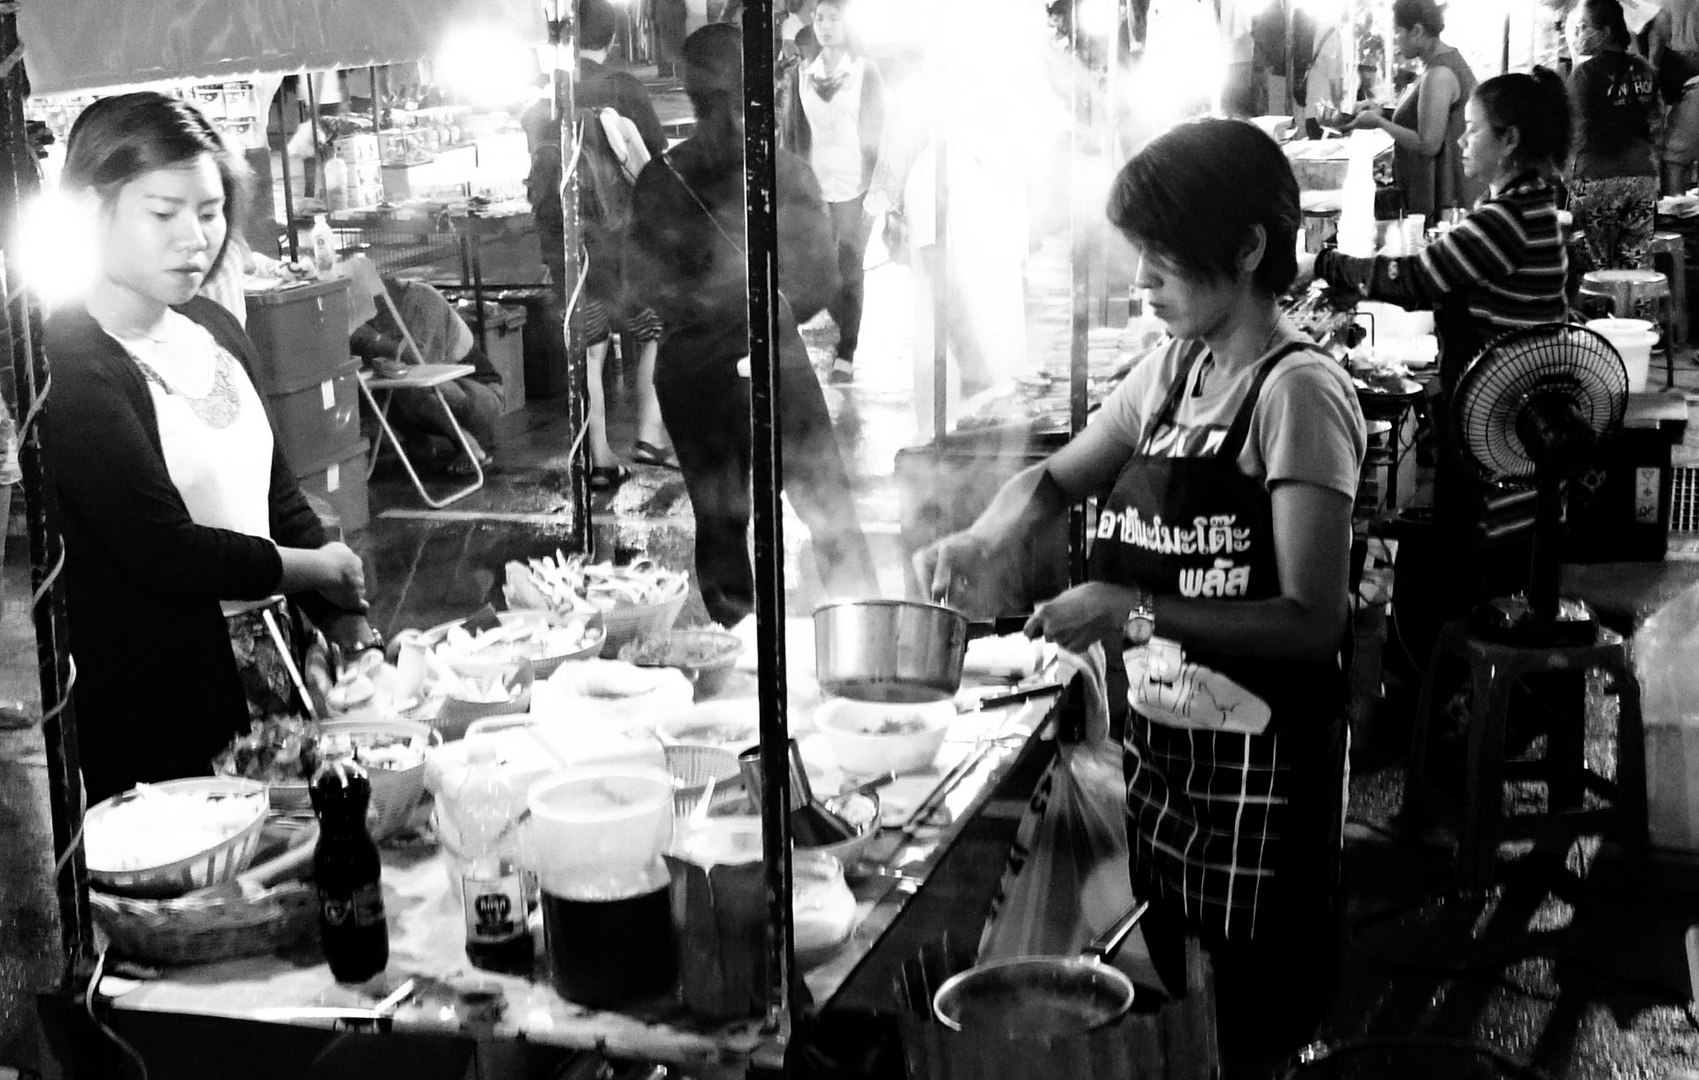 Chaweng night market